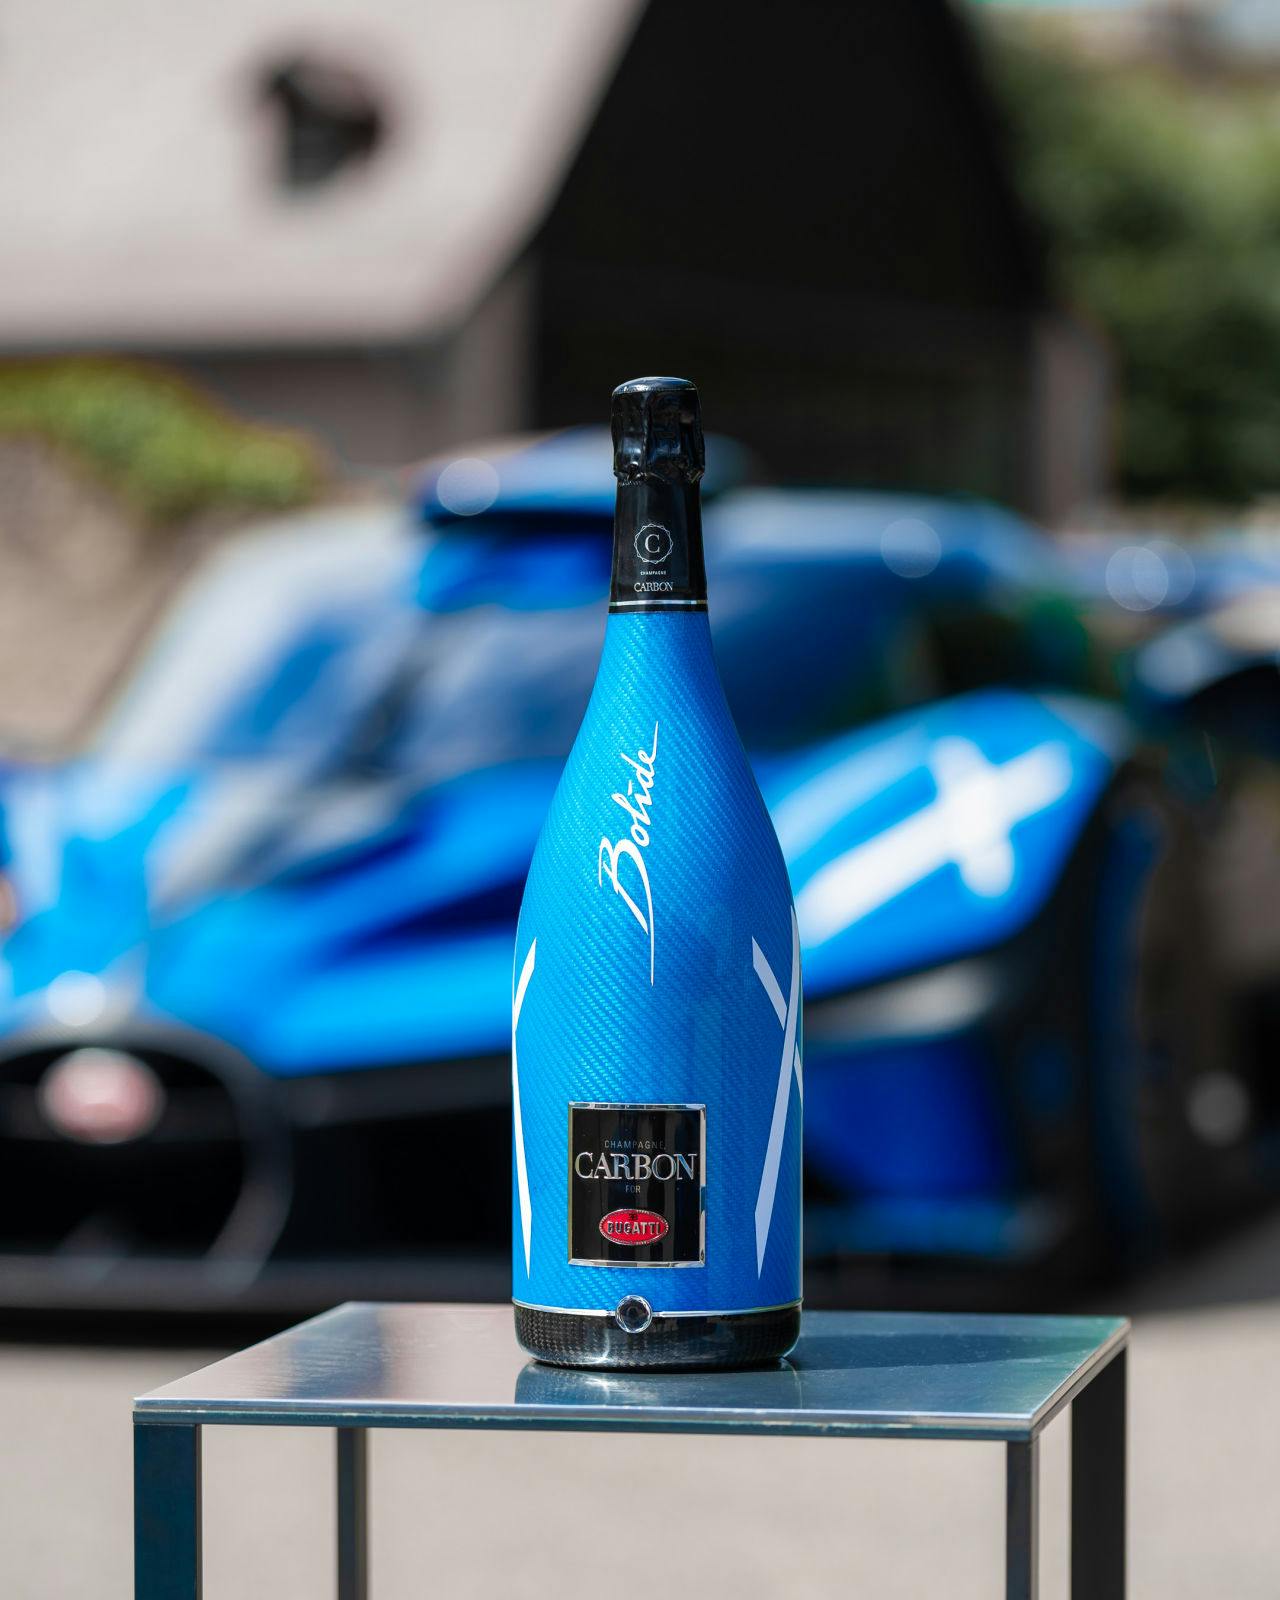 Bugatti dévoile la cuvée ƎB.03, une collaboration avec Champagne Carbon inspirée de la Bugatti Bolide. Please enjoy responsibly. Don't drink and drive.